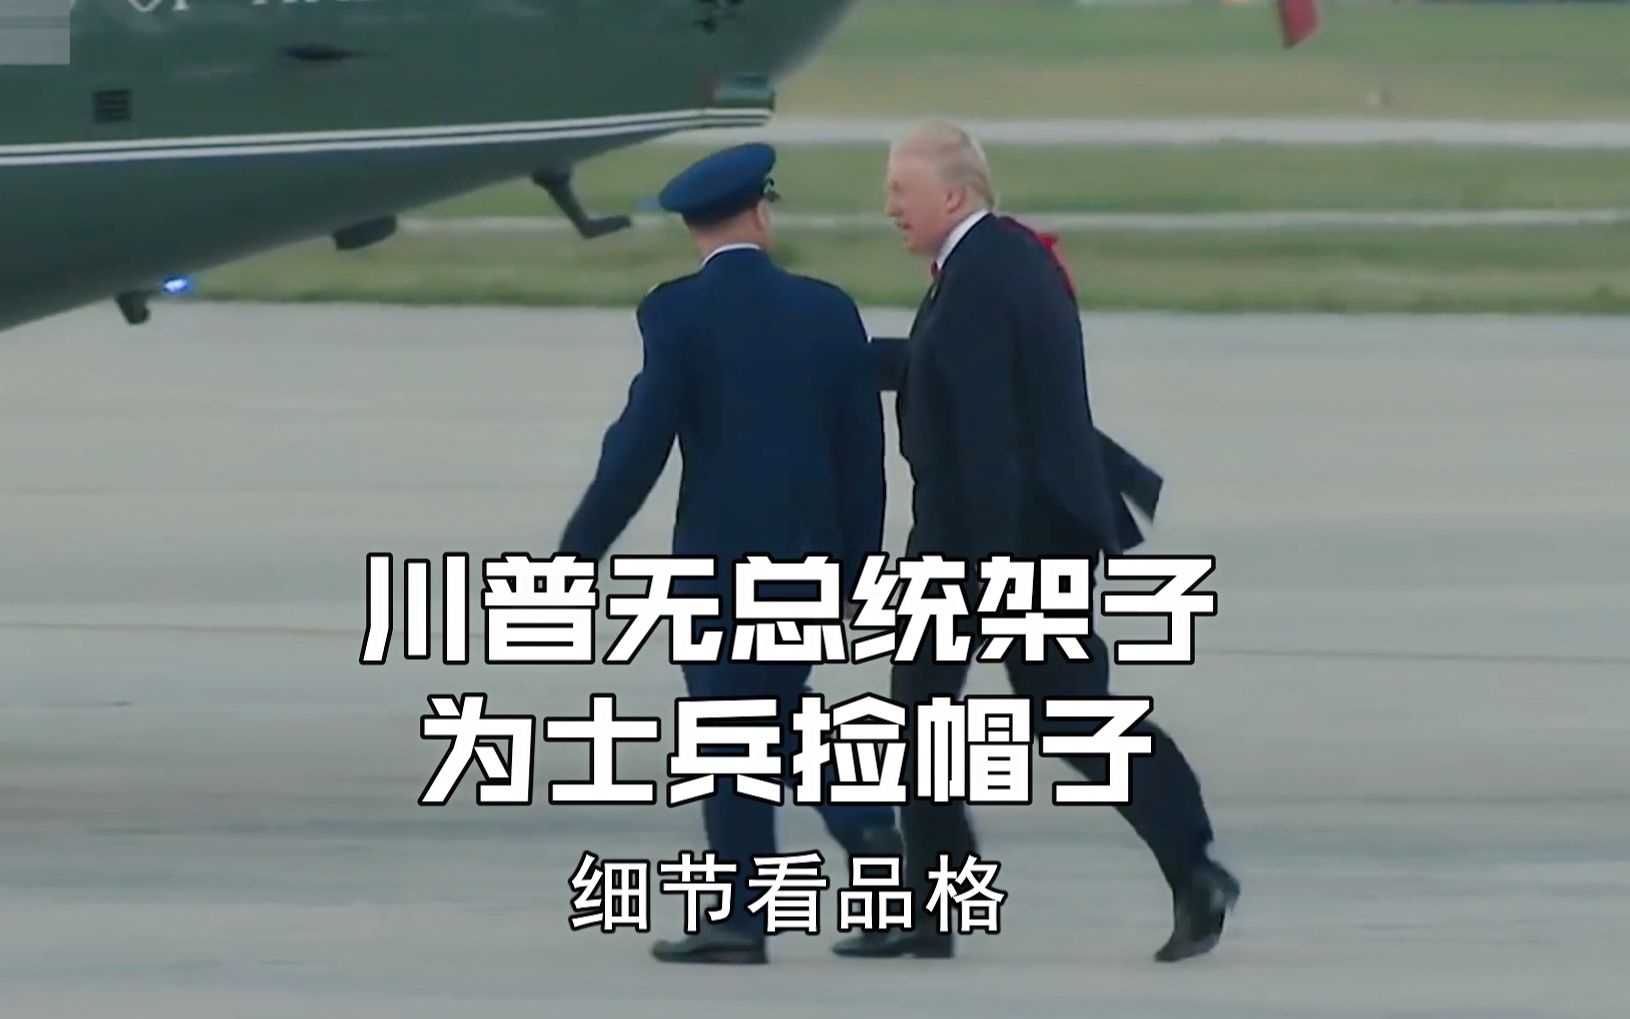 一国总统竟然为普通士兵捡帽子